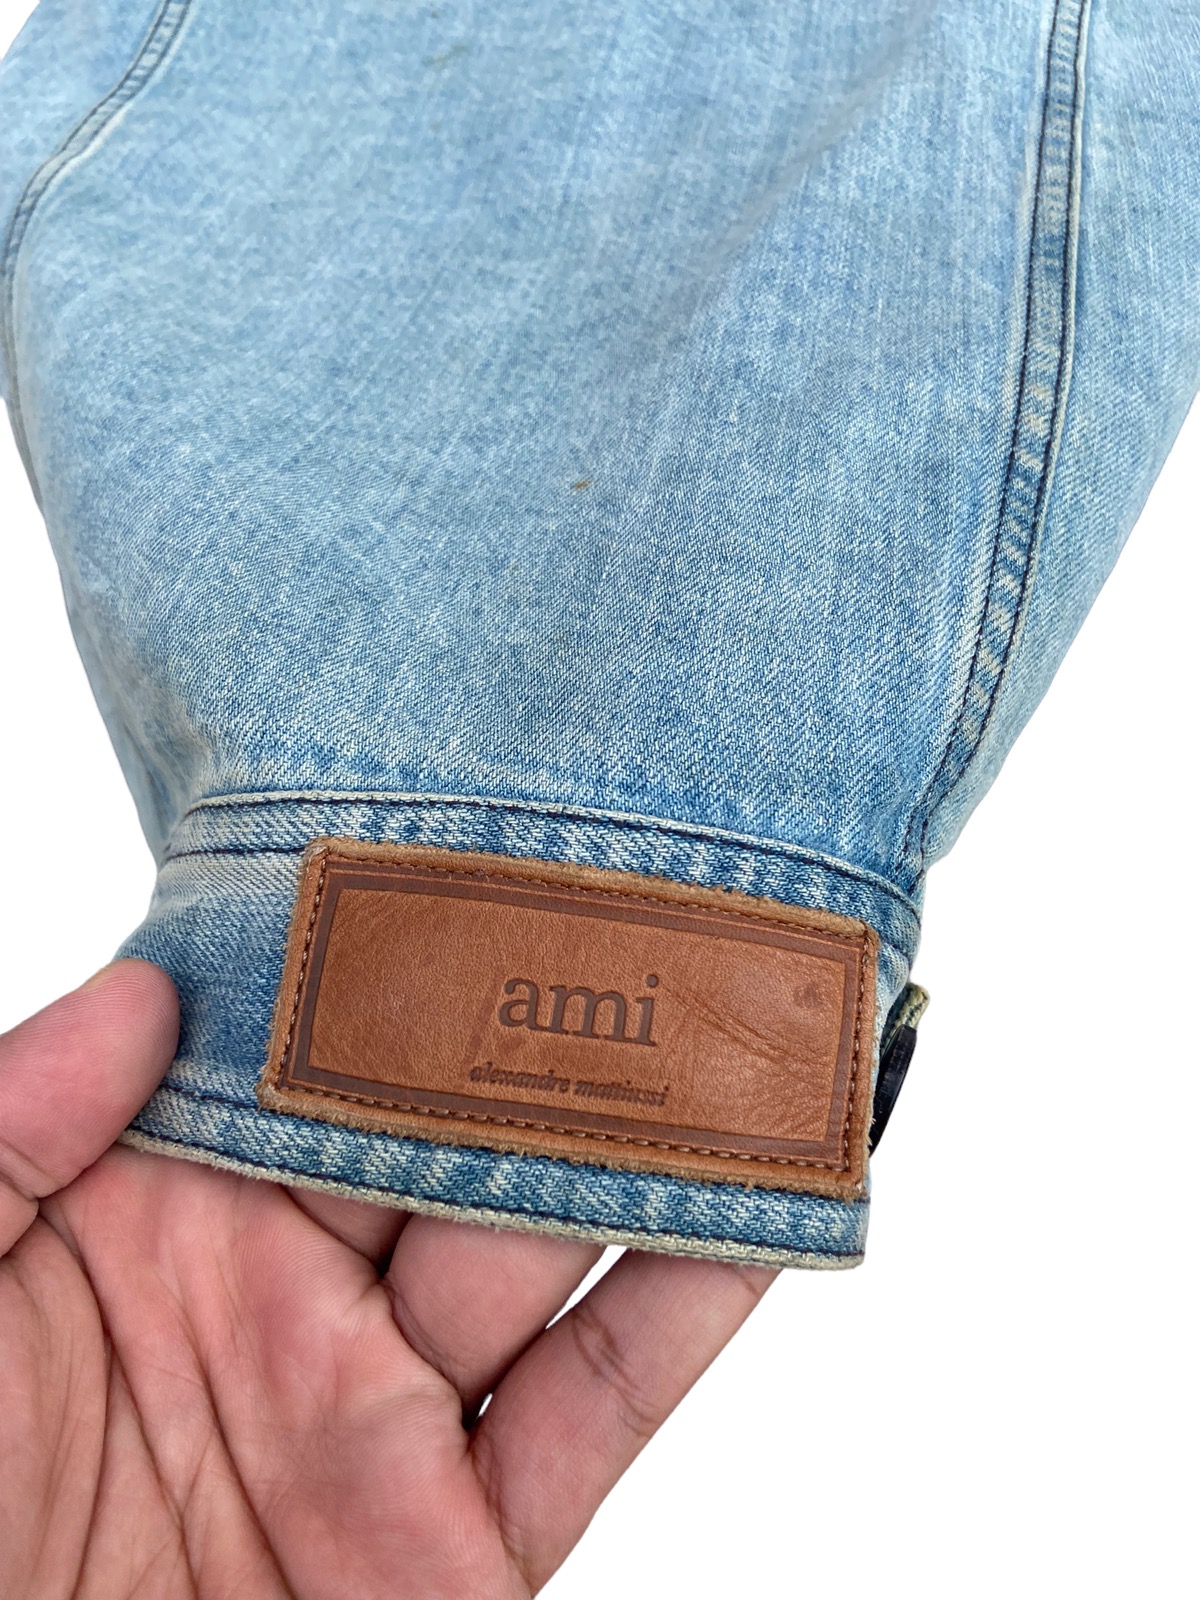 Ami Trucker jacket - 8